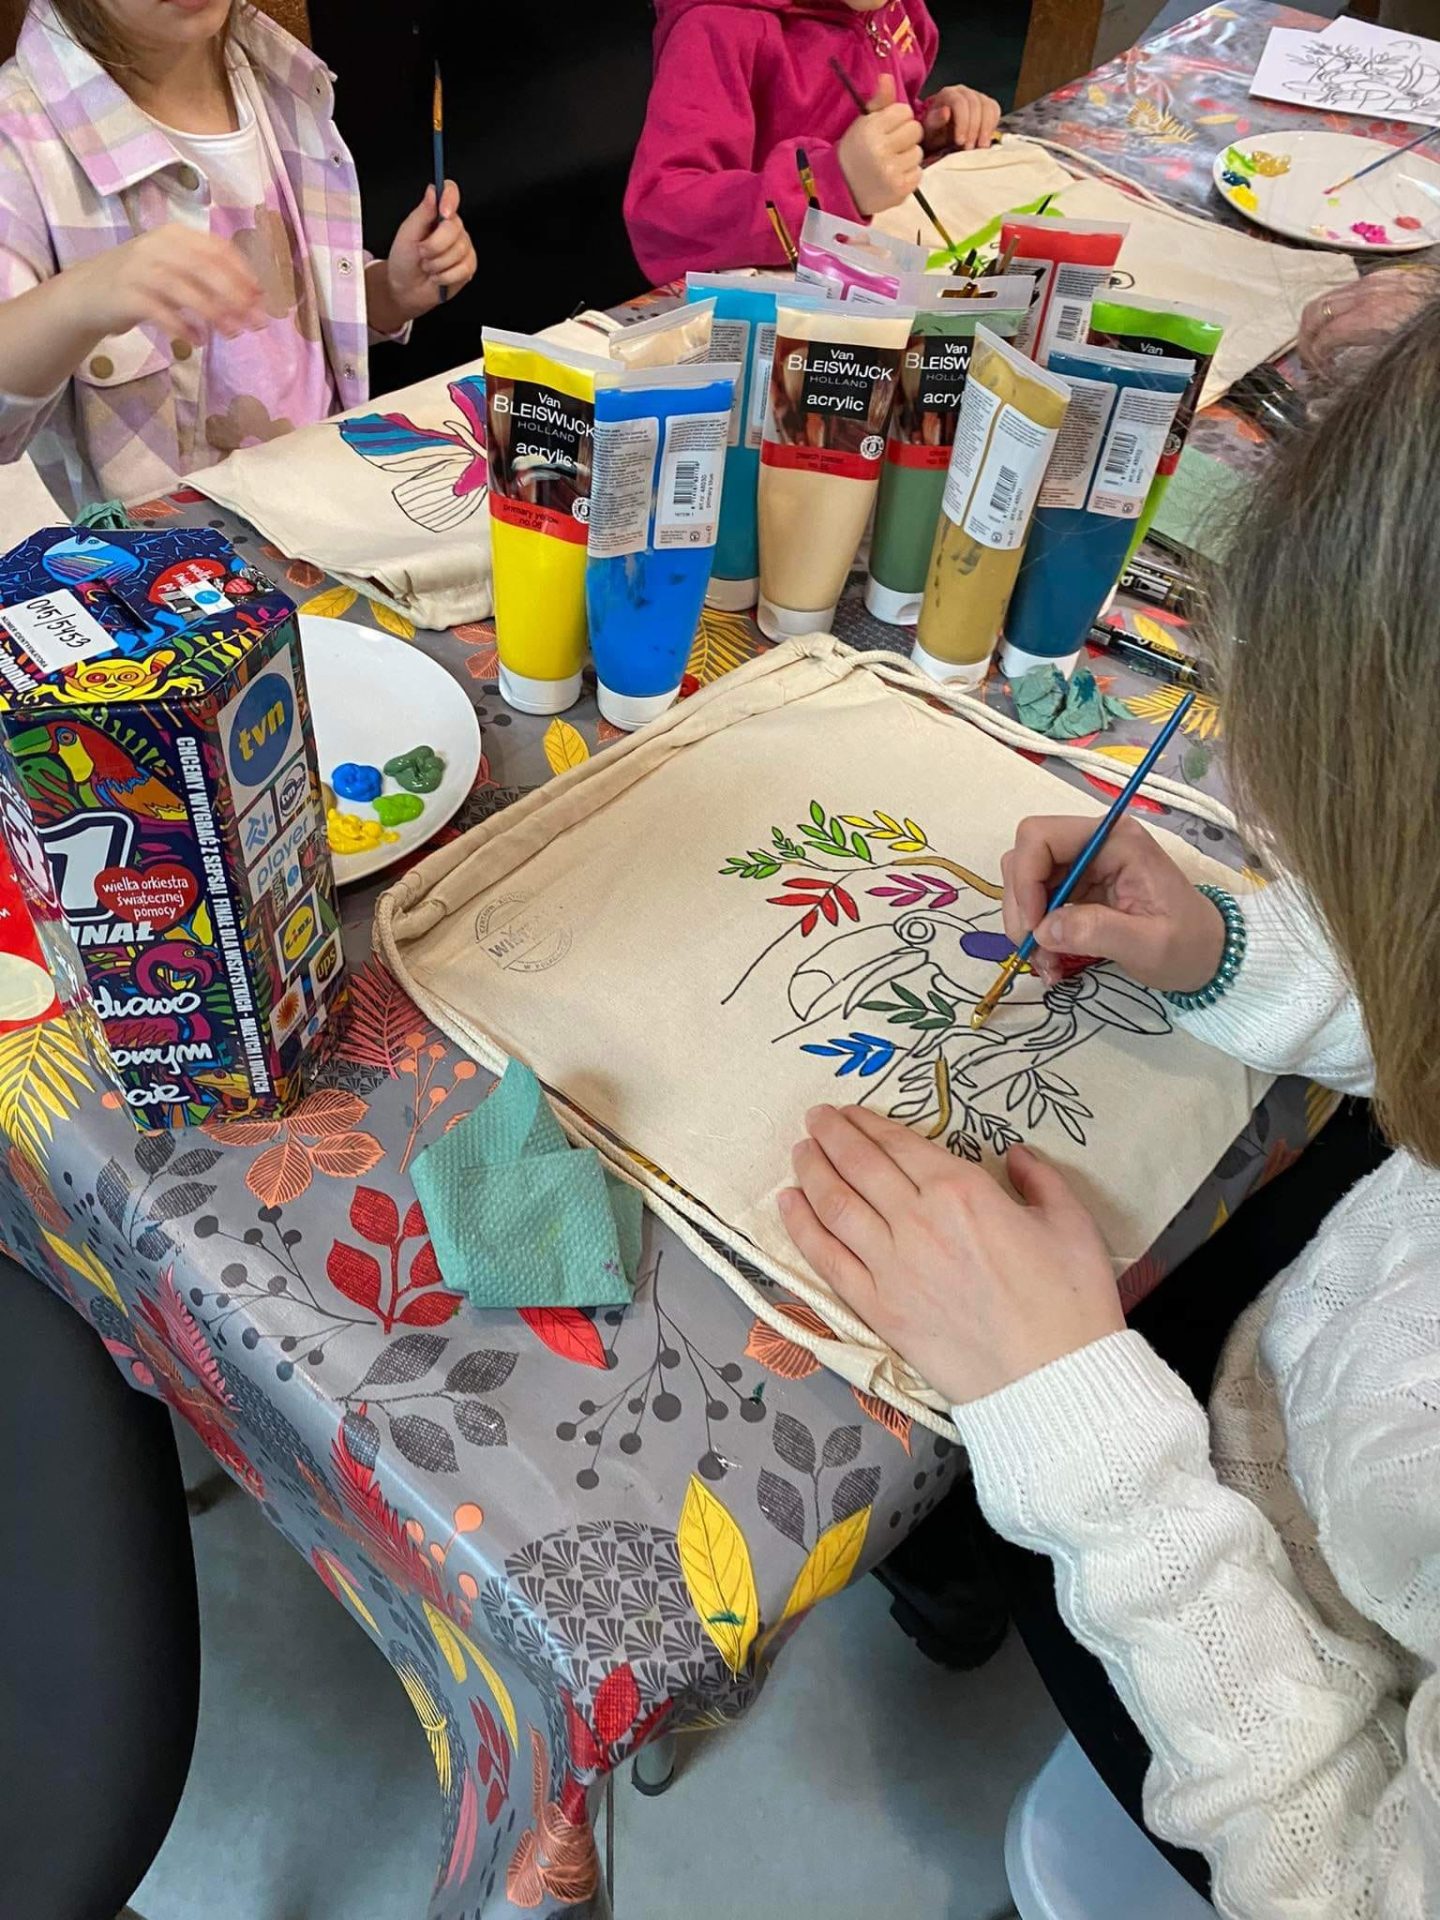 Dziewczynka malująca na torbie tukana, w tle tubki z farbami i puszka WOŚP